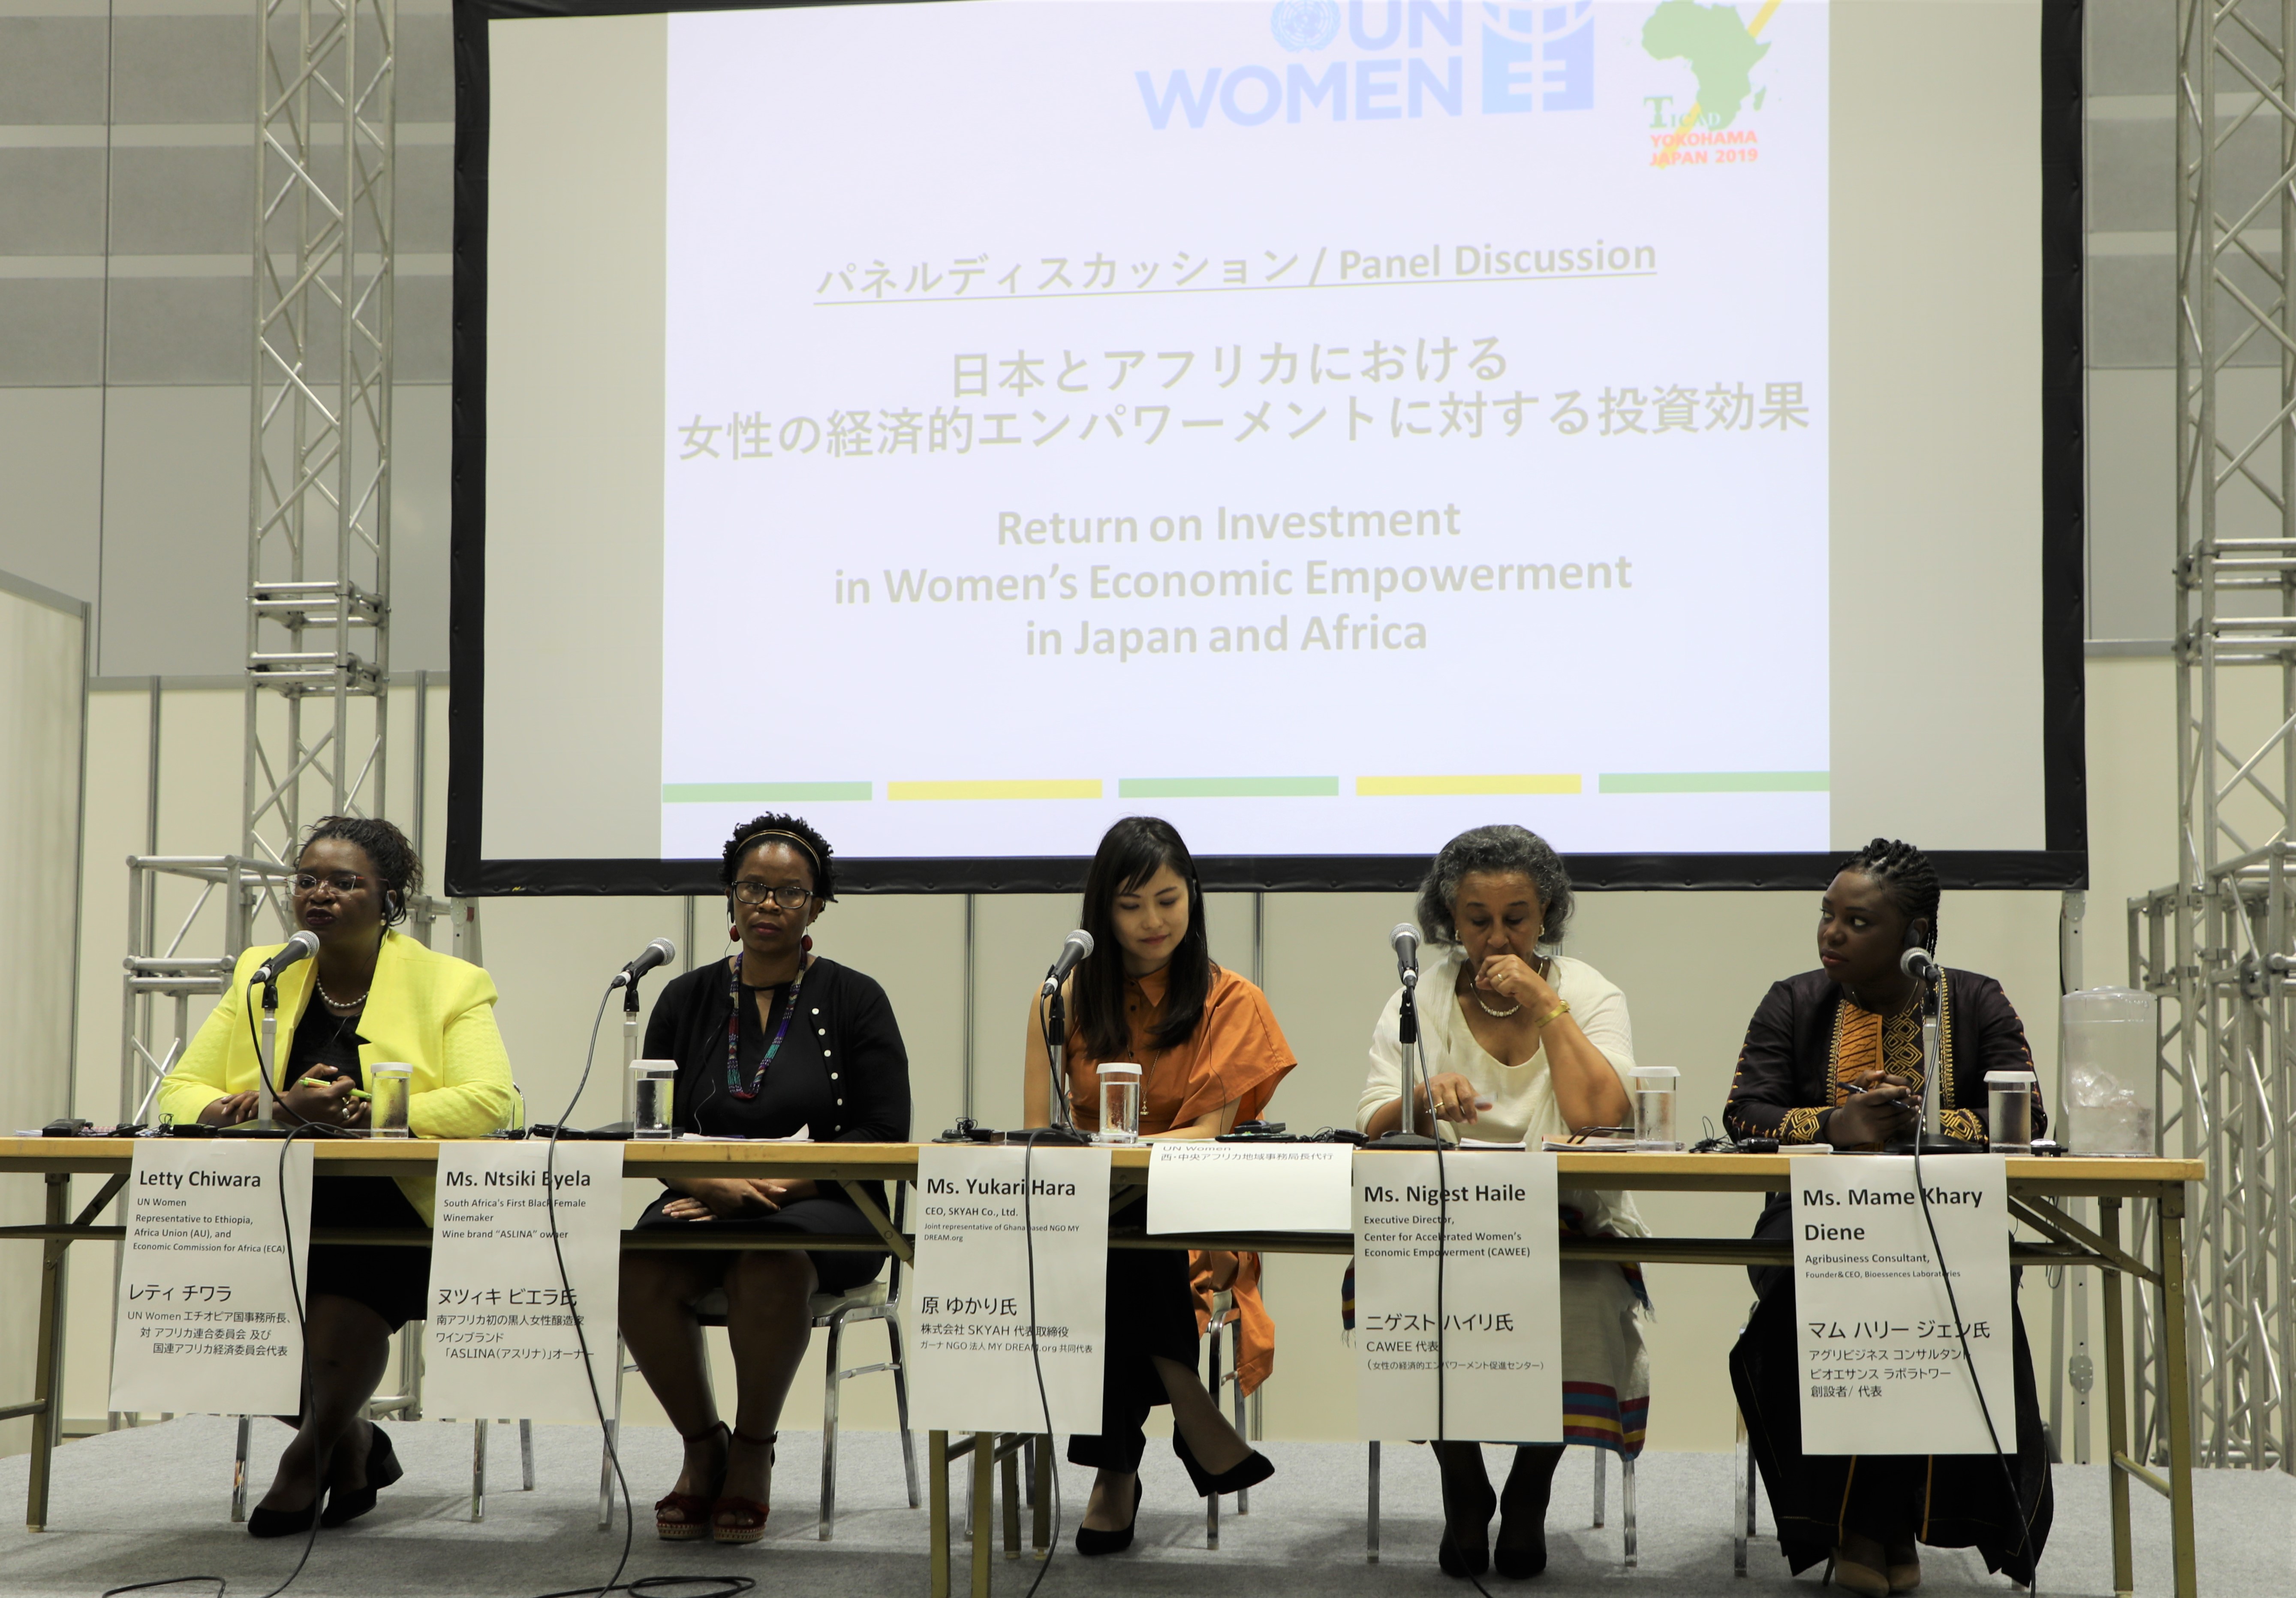 Panel women's economic empowerment brought together Mame Khary Diene, Nigest Haile, Yukari Hara and Ntsiki Biyela. 